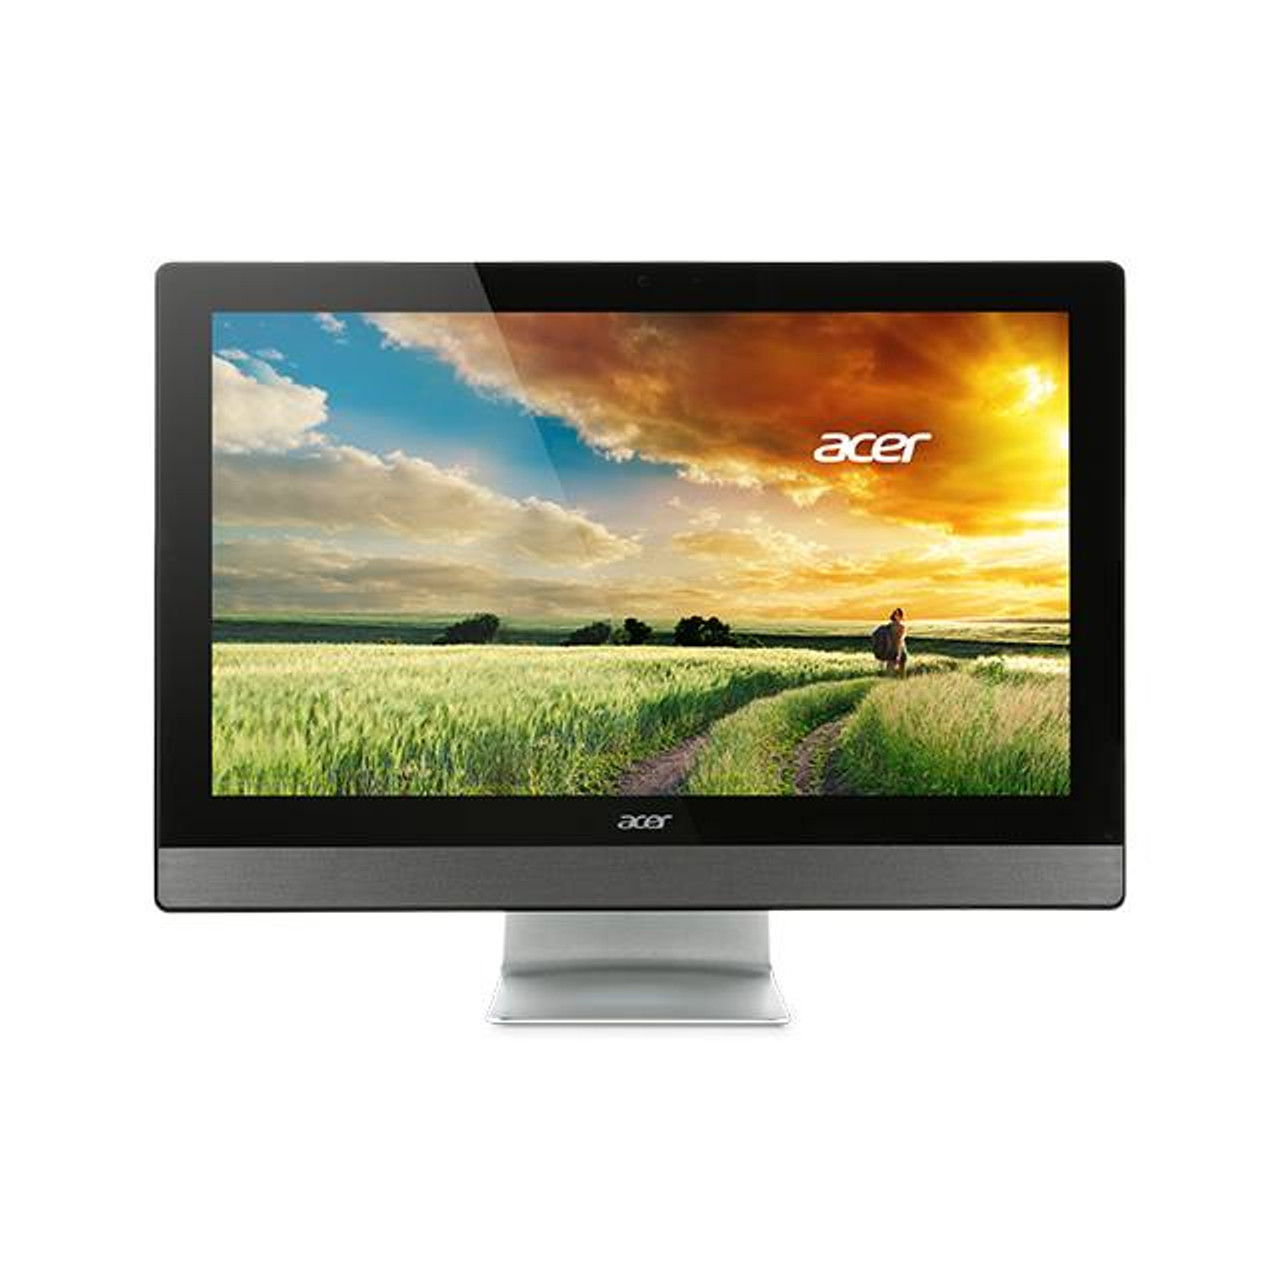 Acer Aspire Z3 AZ3-710-UR55 23.8 inch Intel Core i3-4170T 3.2GHz/ 6GB DDR3L/ 1TB HDD/ DVD±RW/ Windows 10 Home All-in-One PC (Black & Silver)